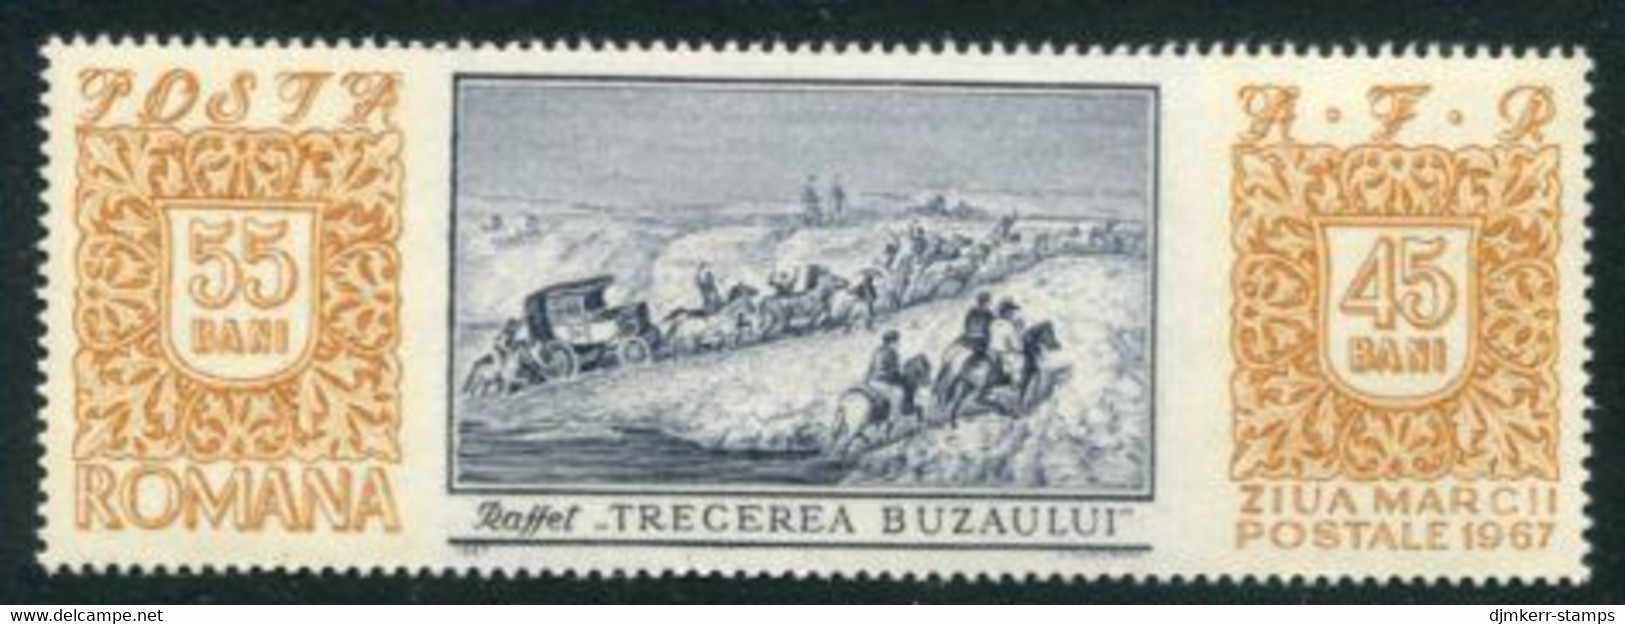 ROMANIA 1967 Stamp Day  MNH / **.  Michel 2634 - Ongebruikt